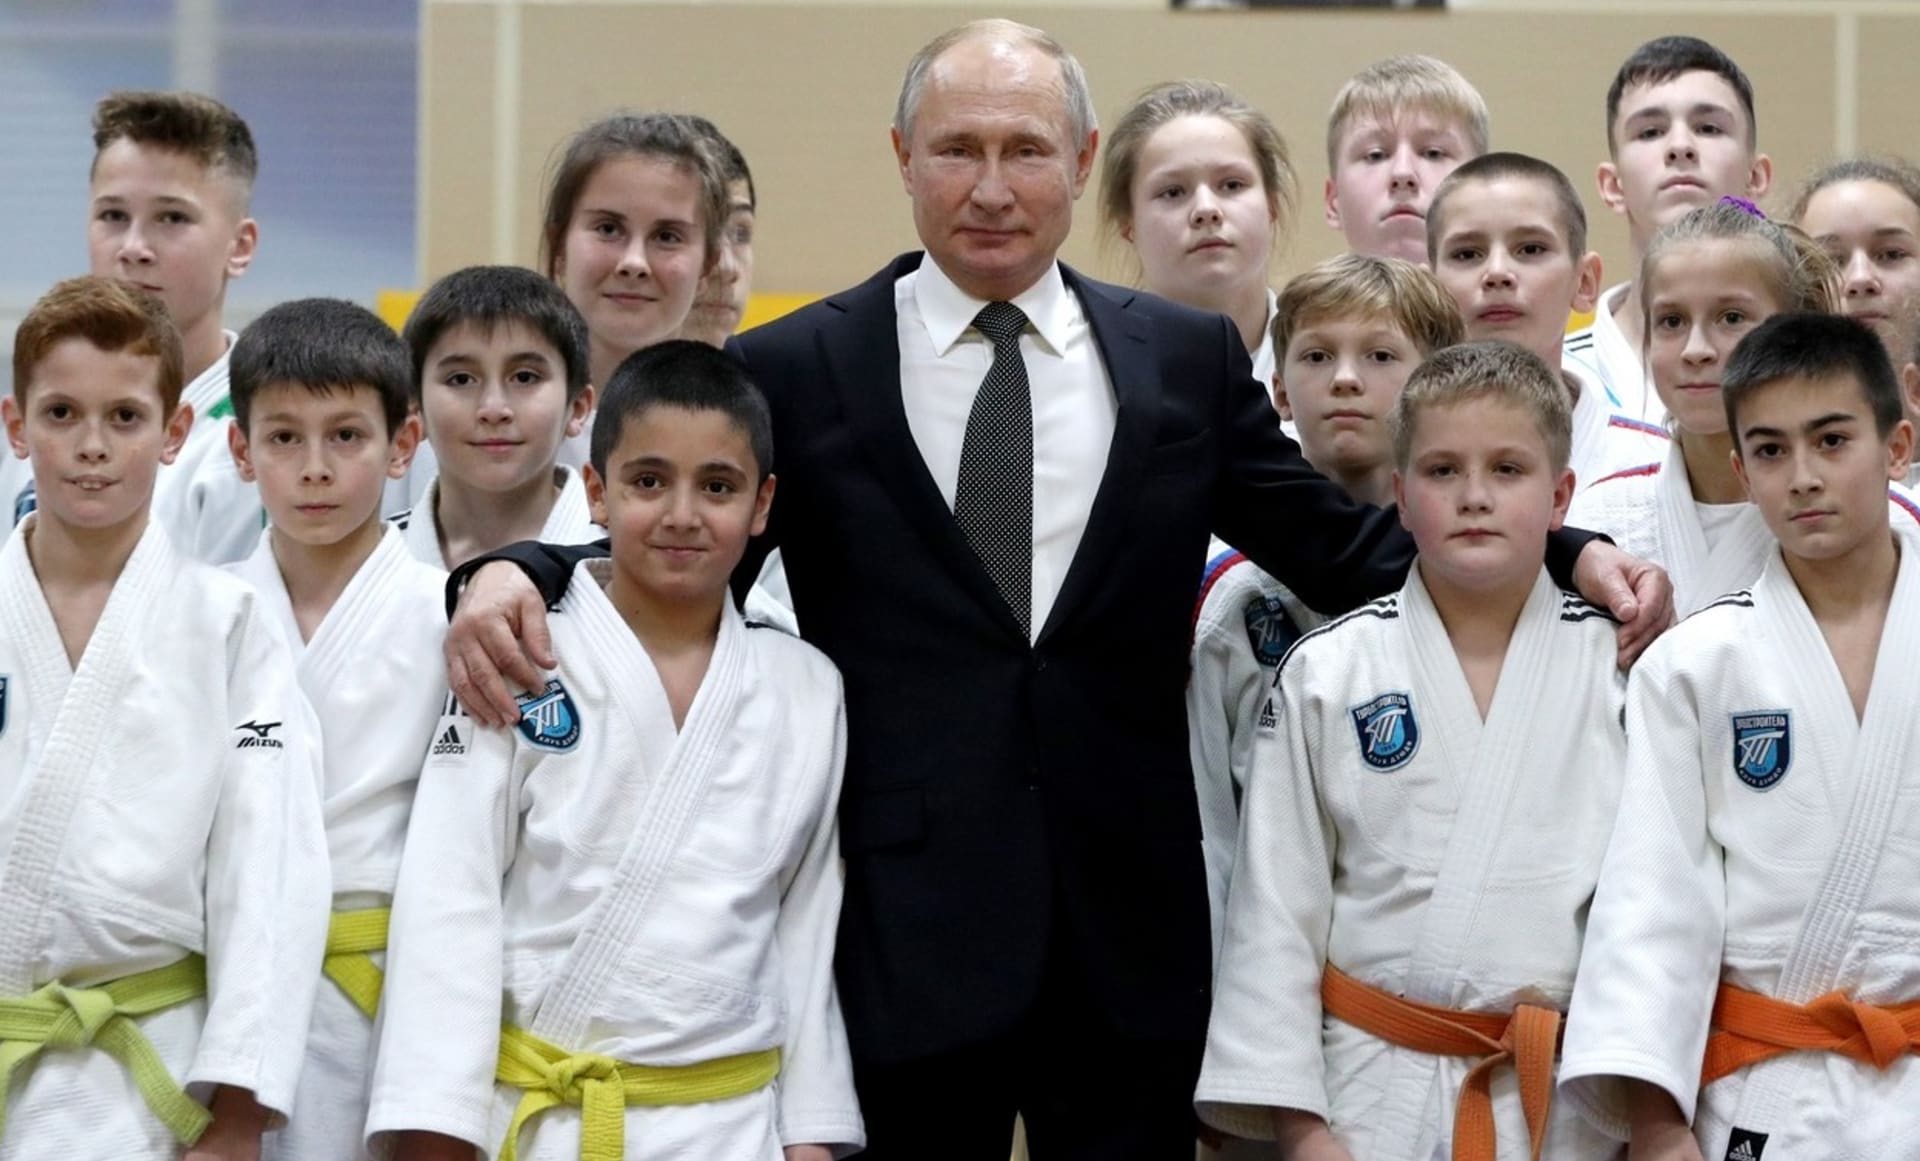 Nejen Mezinárodní federace juda symbolicky potrestala Vladimira Putina.